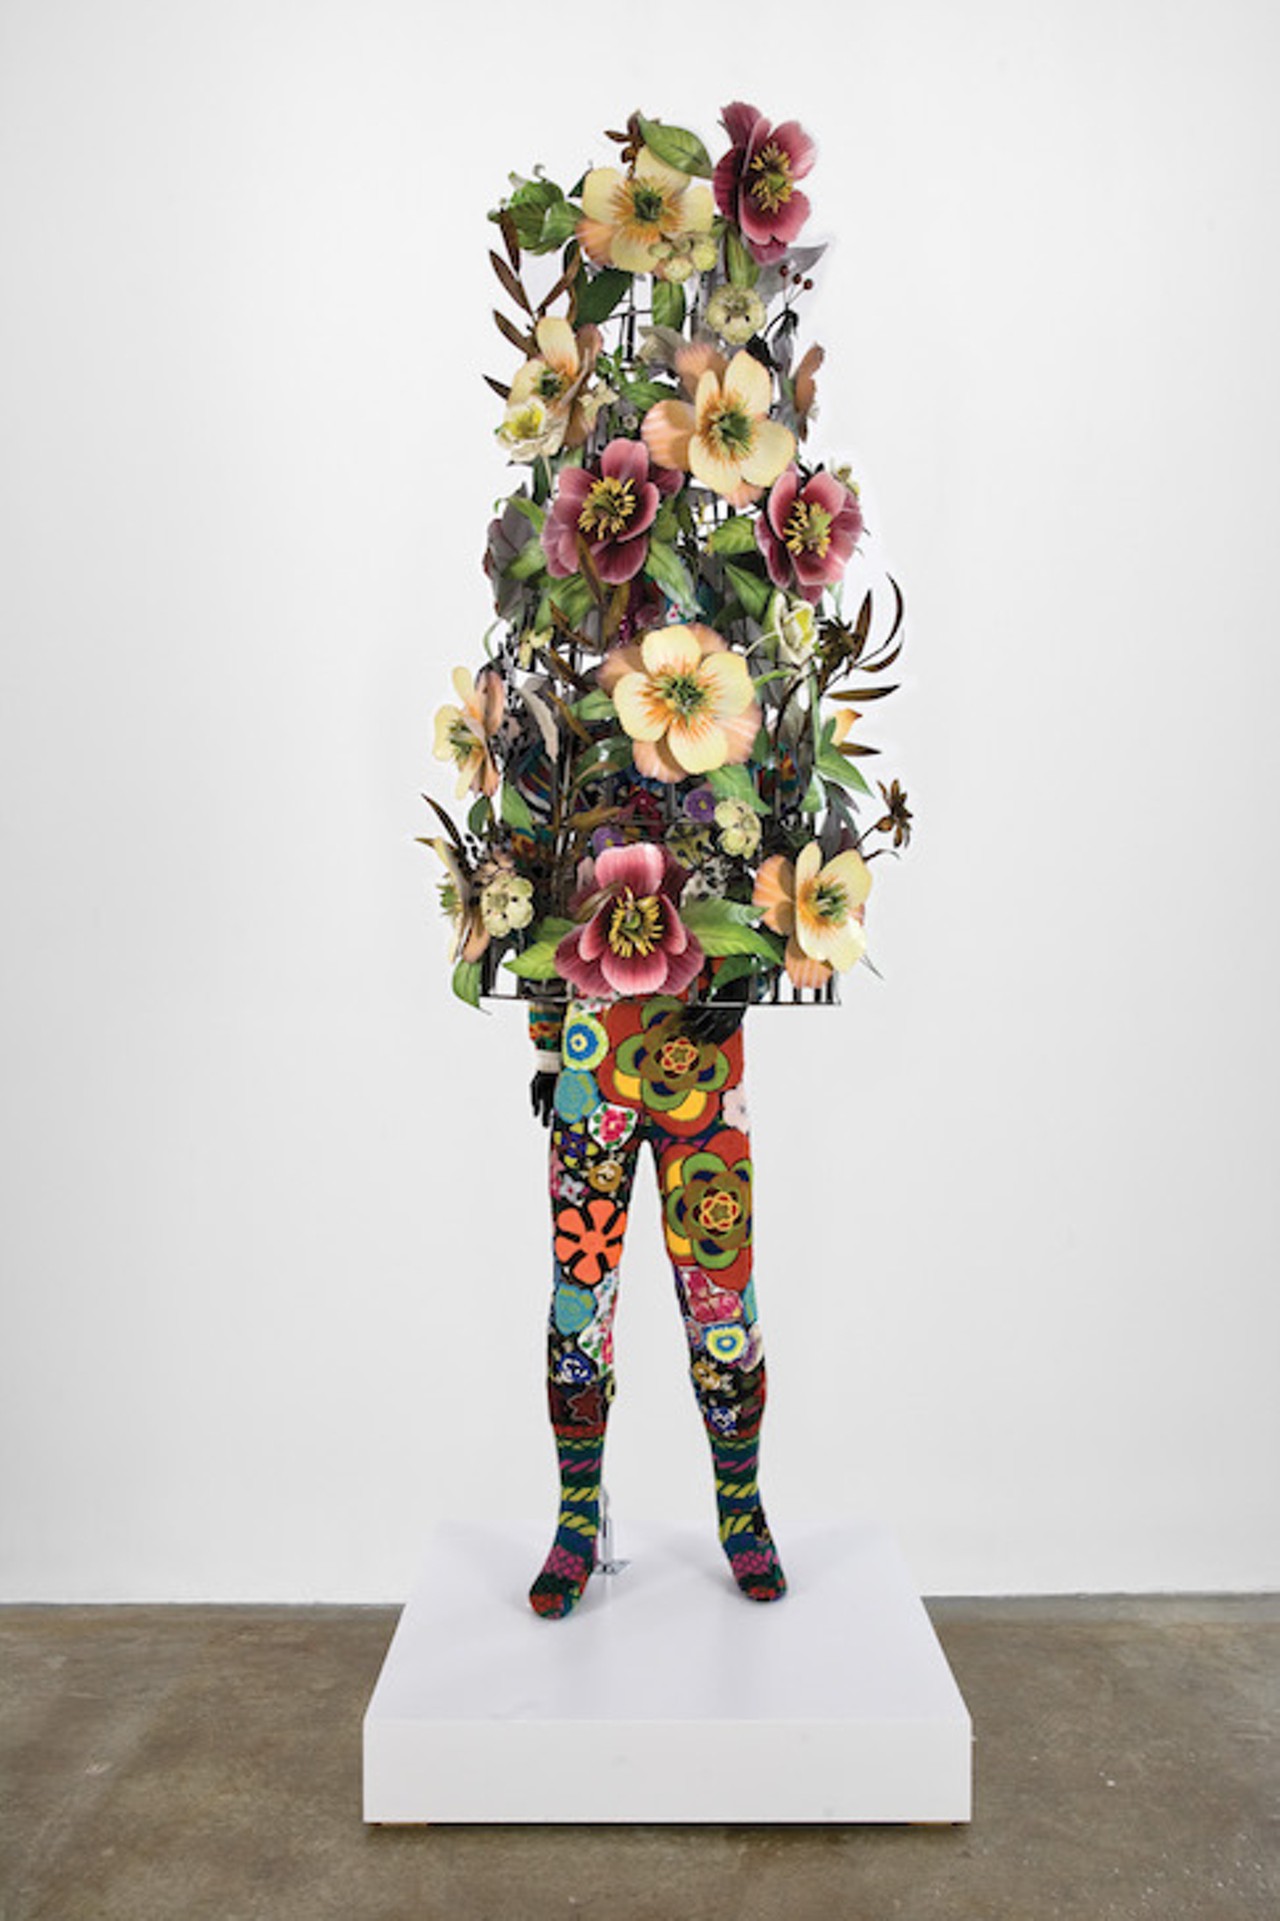 Nick Cave, Soundsuit, 2008. Fabrics, sequins, fiberglass, and metal.